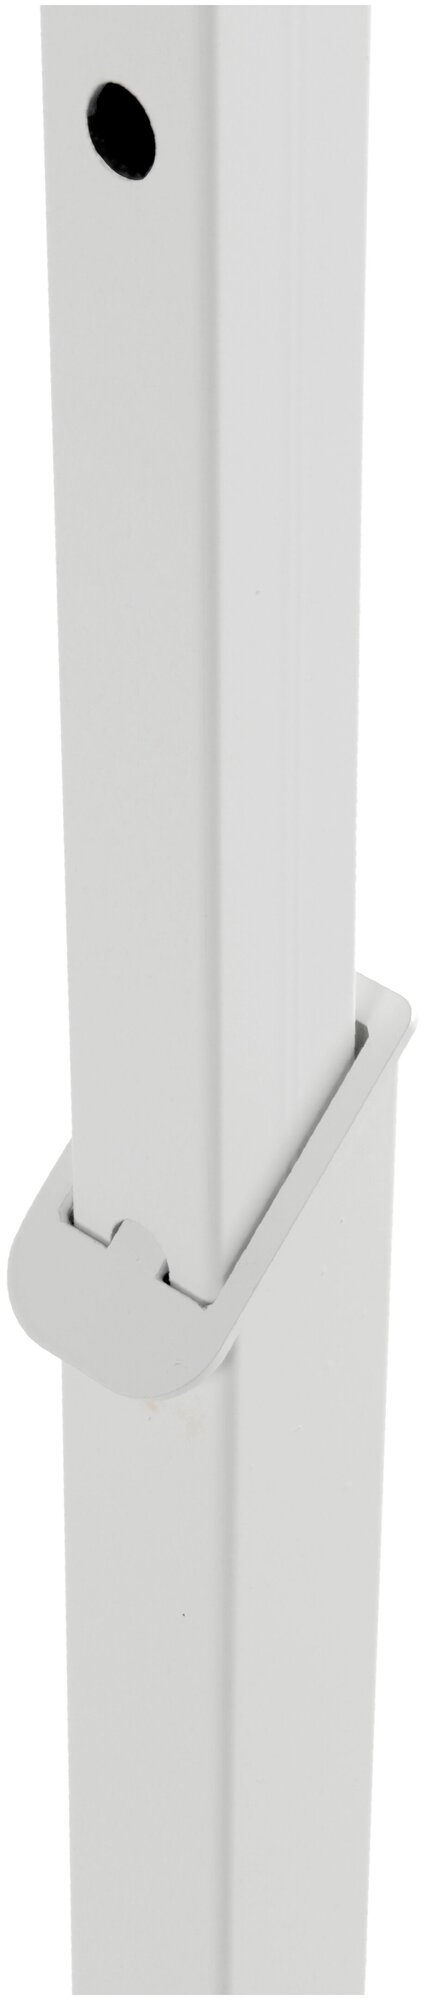 Вешалка напольная ALBERO-1200 белая с полкой цвета дуб - фотография № 4